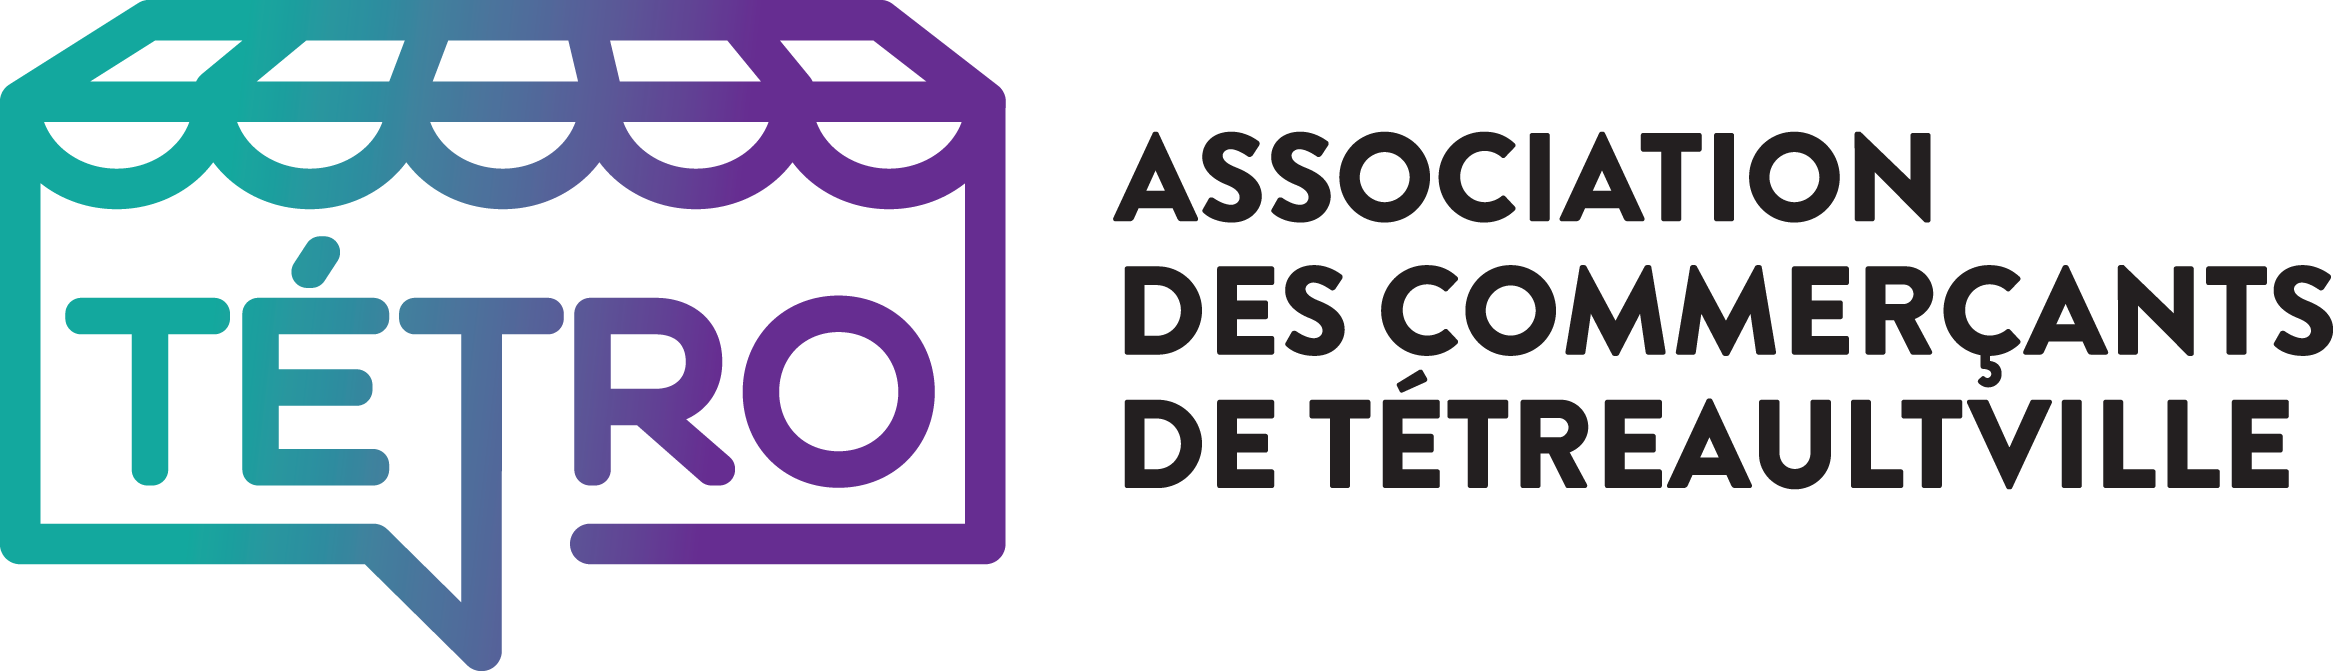 Logo de Association des commerçants de Tétreaultville